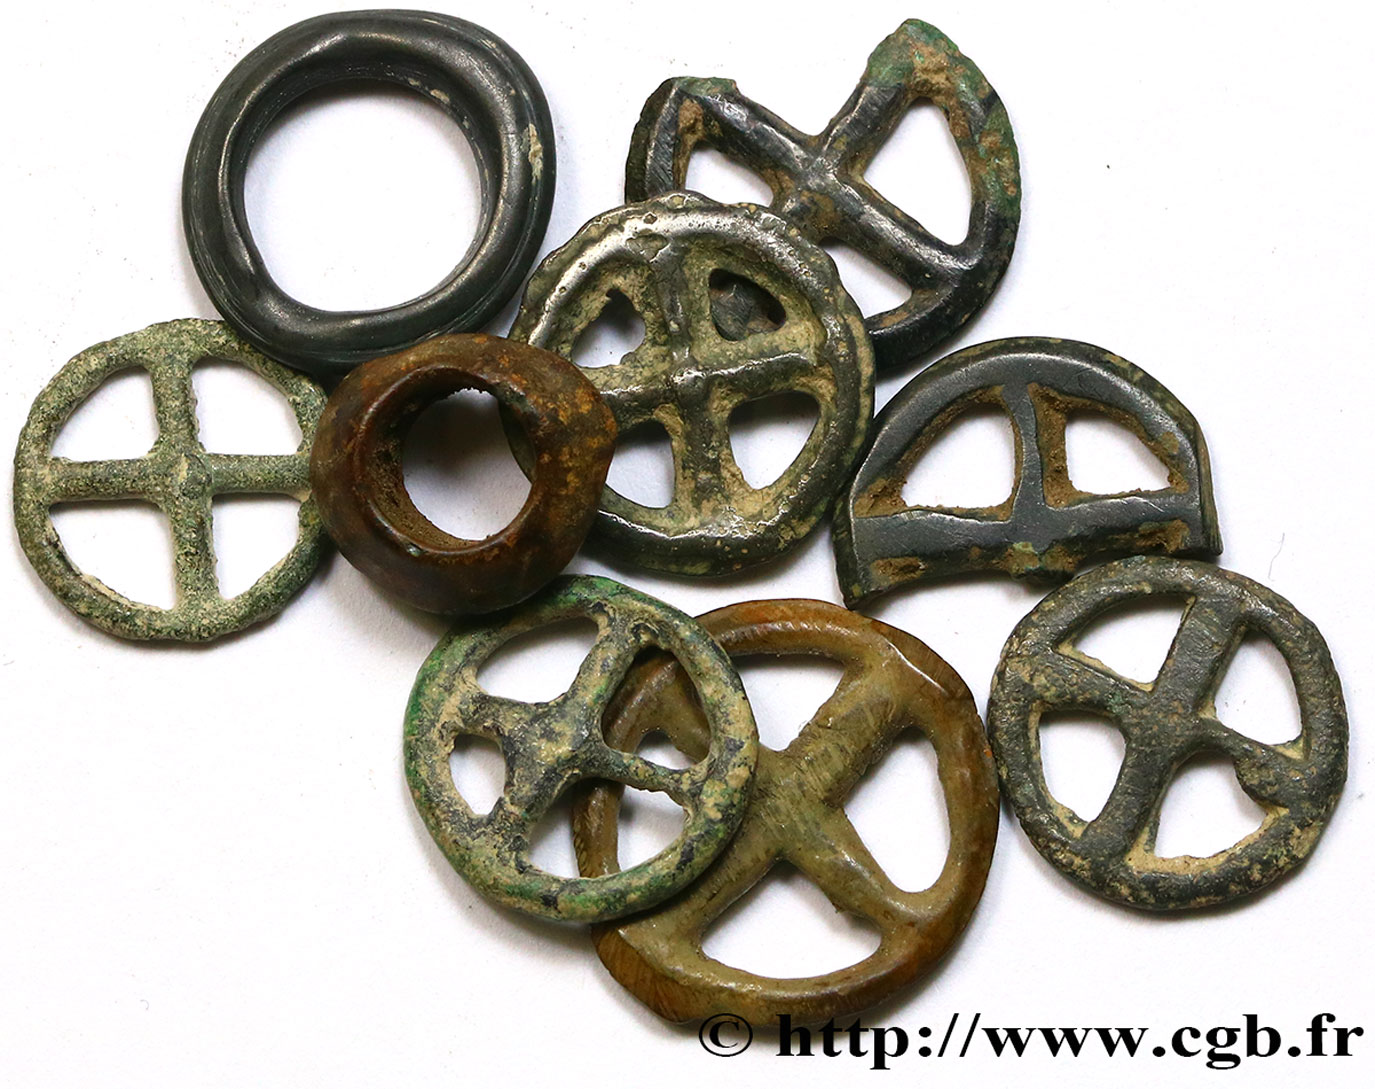  ROUELLES  Lot de 7 rouelles à 4 rayons, en potin et 2 anneaux en bronze lot